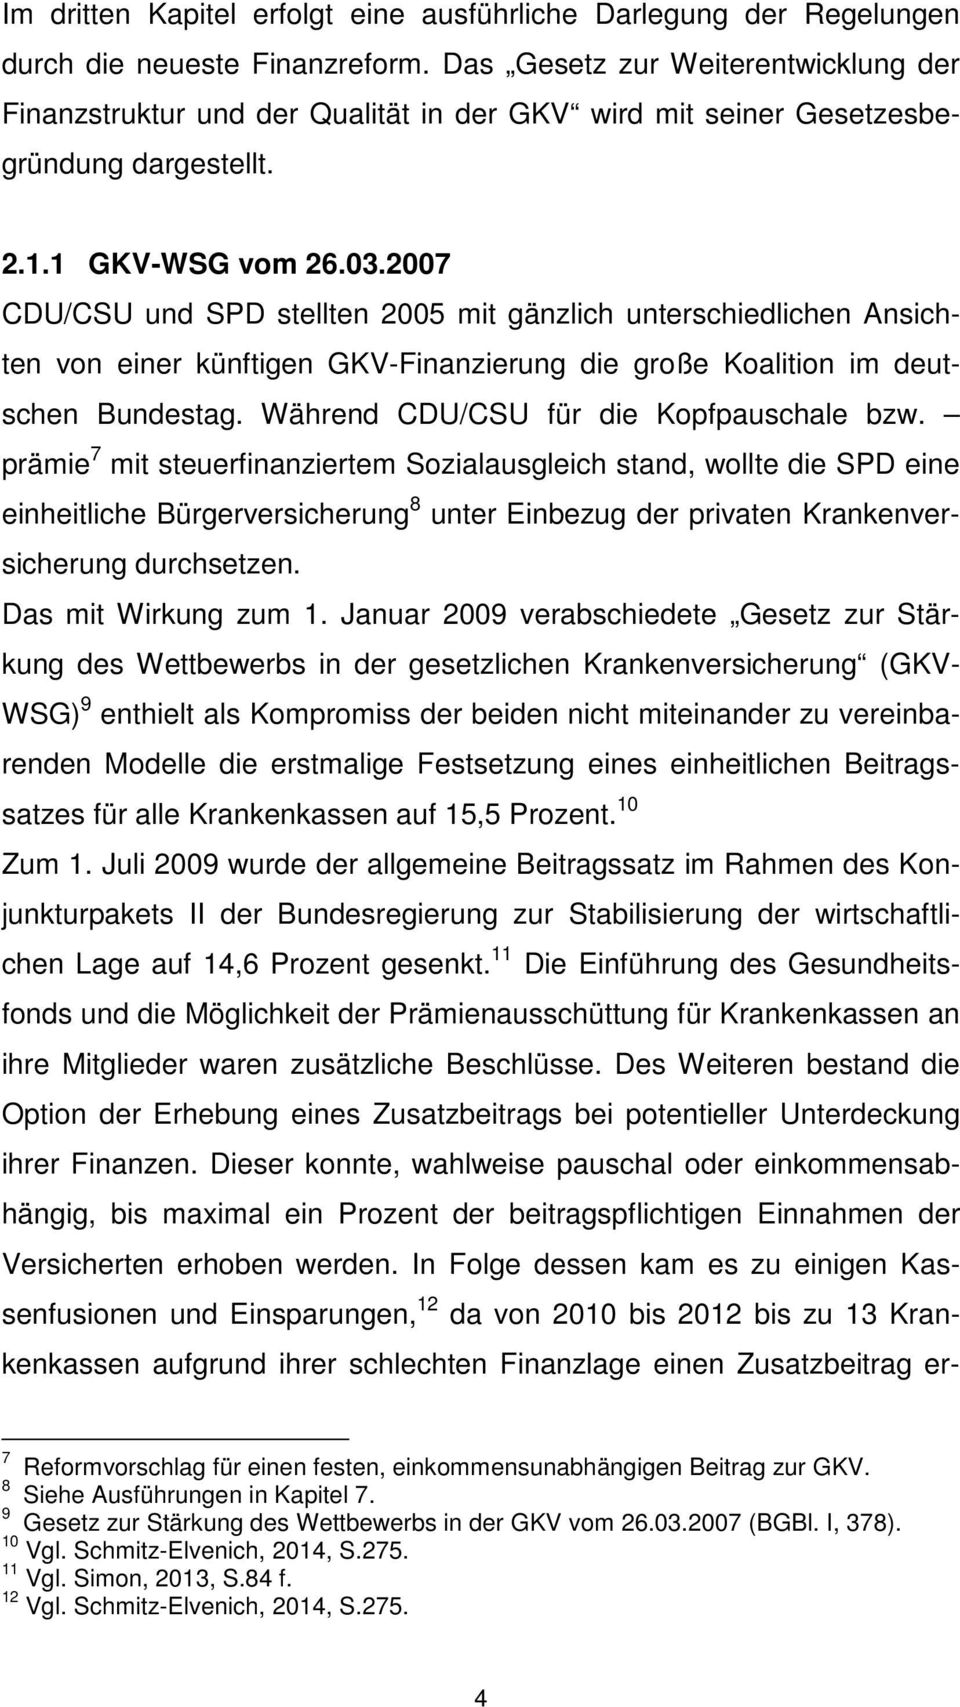 2007 CDU/CSU und SPD stellten 2005 mit gänzlich unterschiedlichen Ansichten von einer künftigen GKV-Finanzierung die große Koalition im deutschen Bundestag. Während CDU/CSU für die Kopfpauschale bzw.